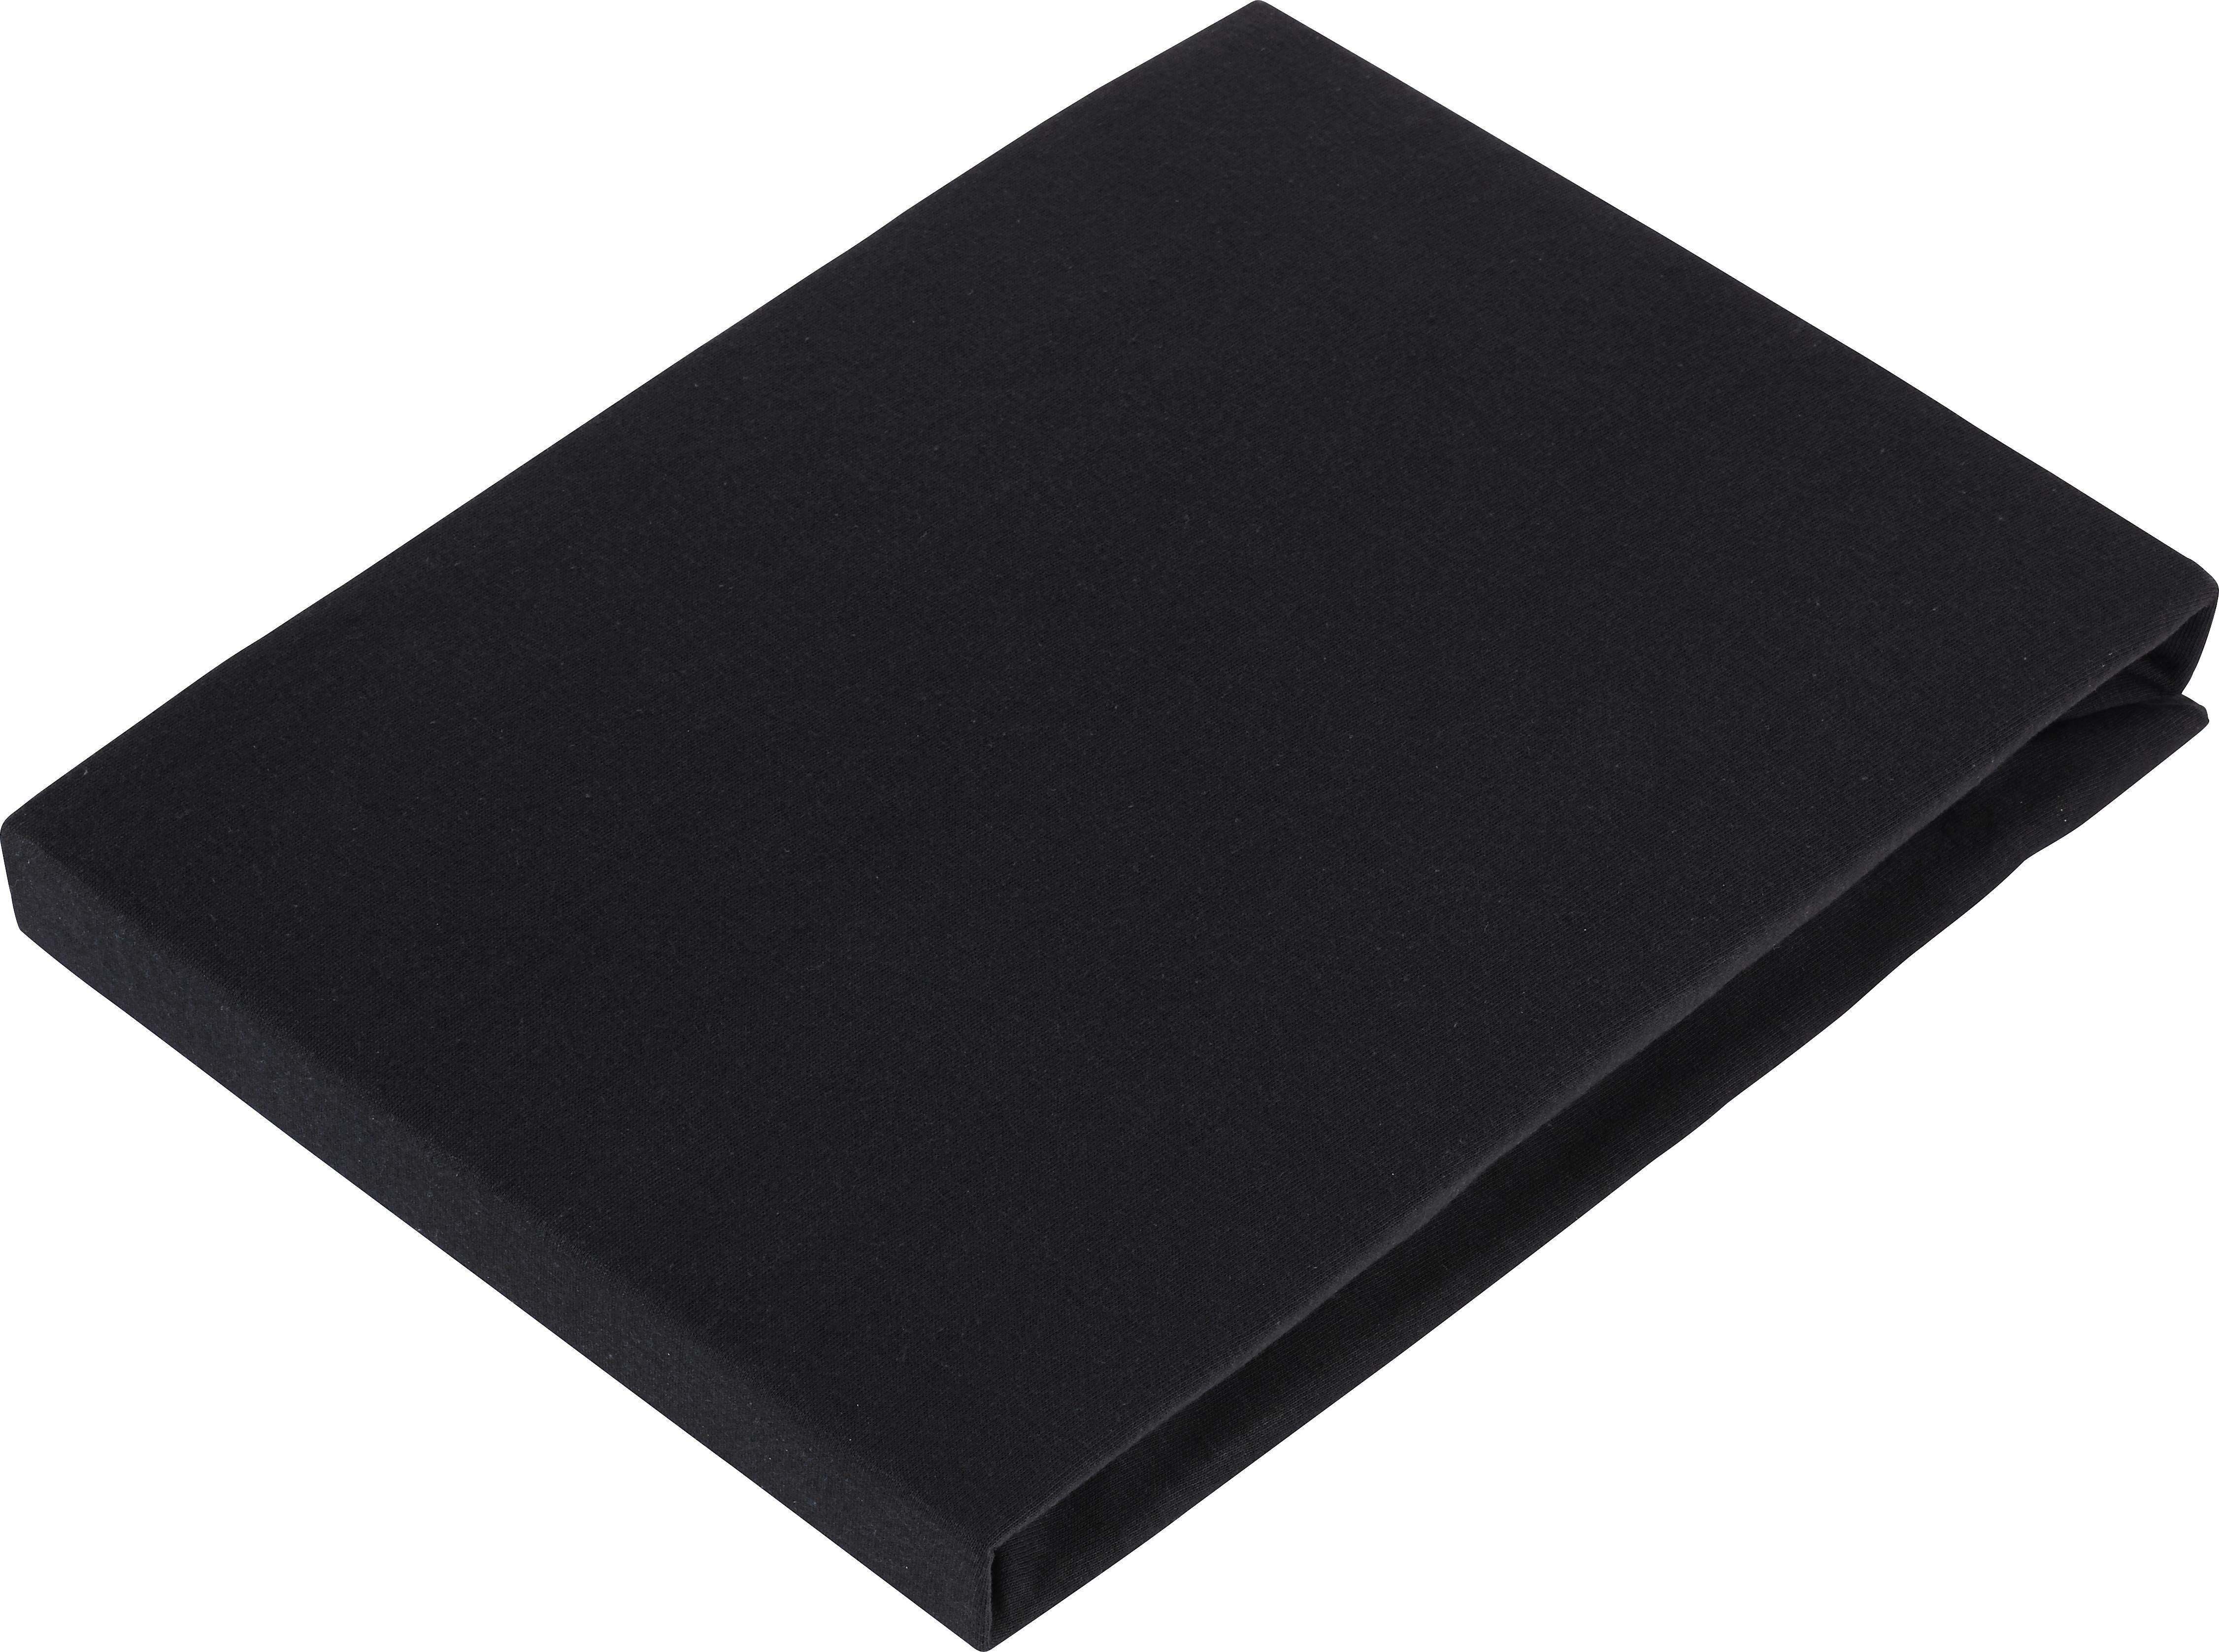 Elastické Prostěradlo Basic, 100/200cm, Černá - černá, textil (100/200cm) - Modern Living